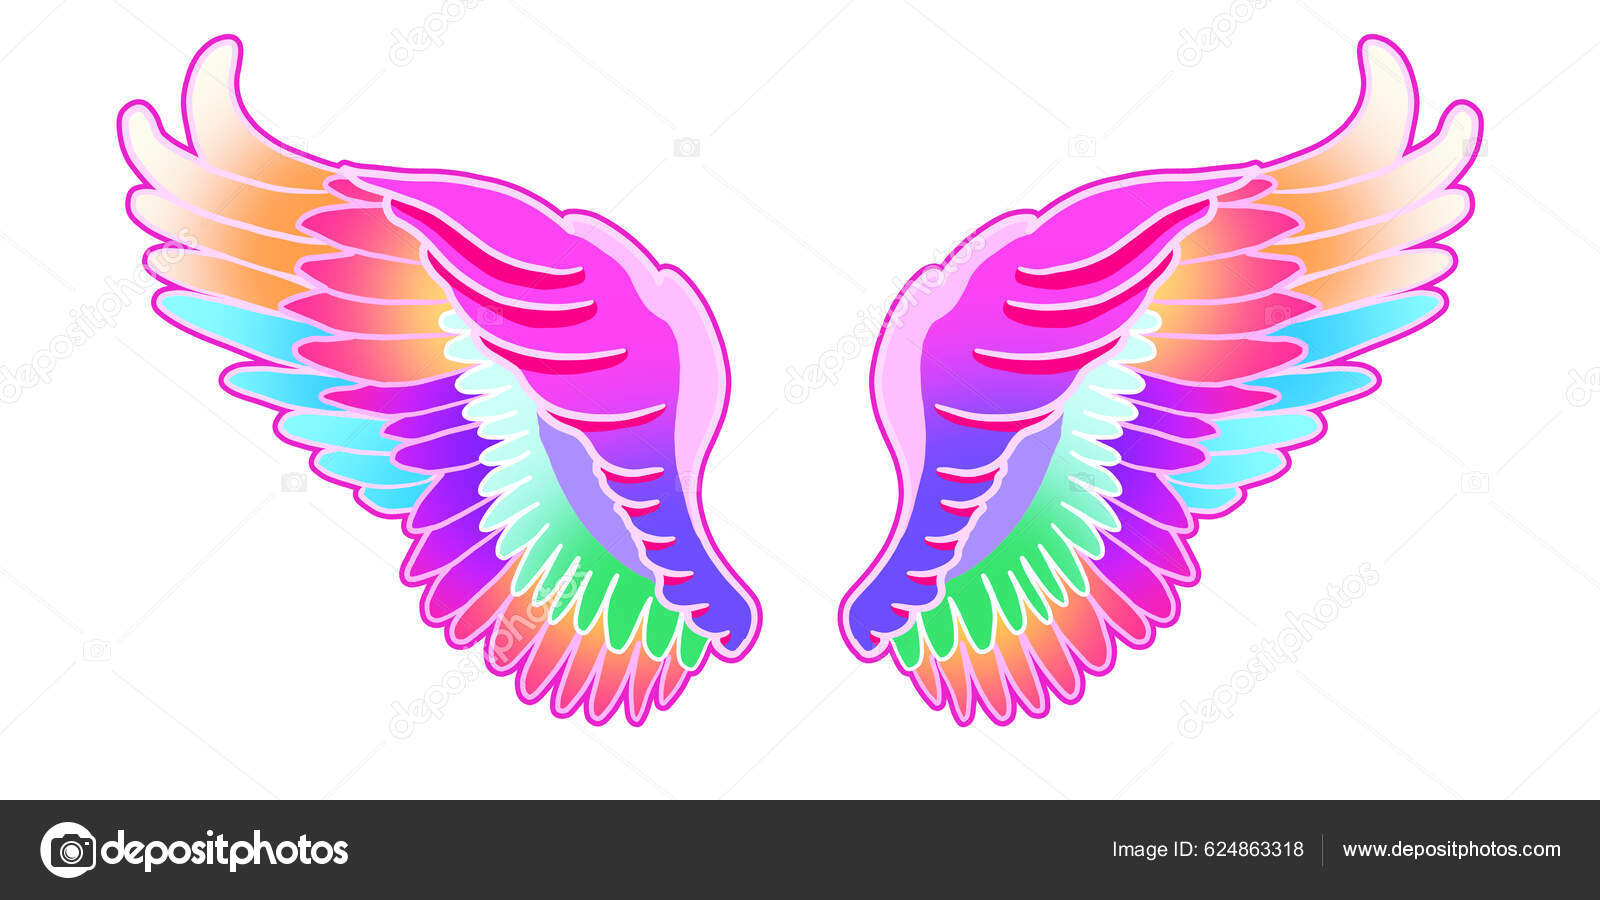 cute angel wings background